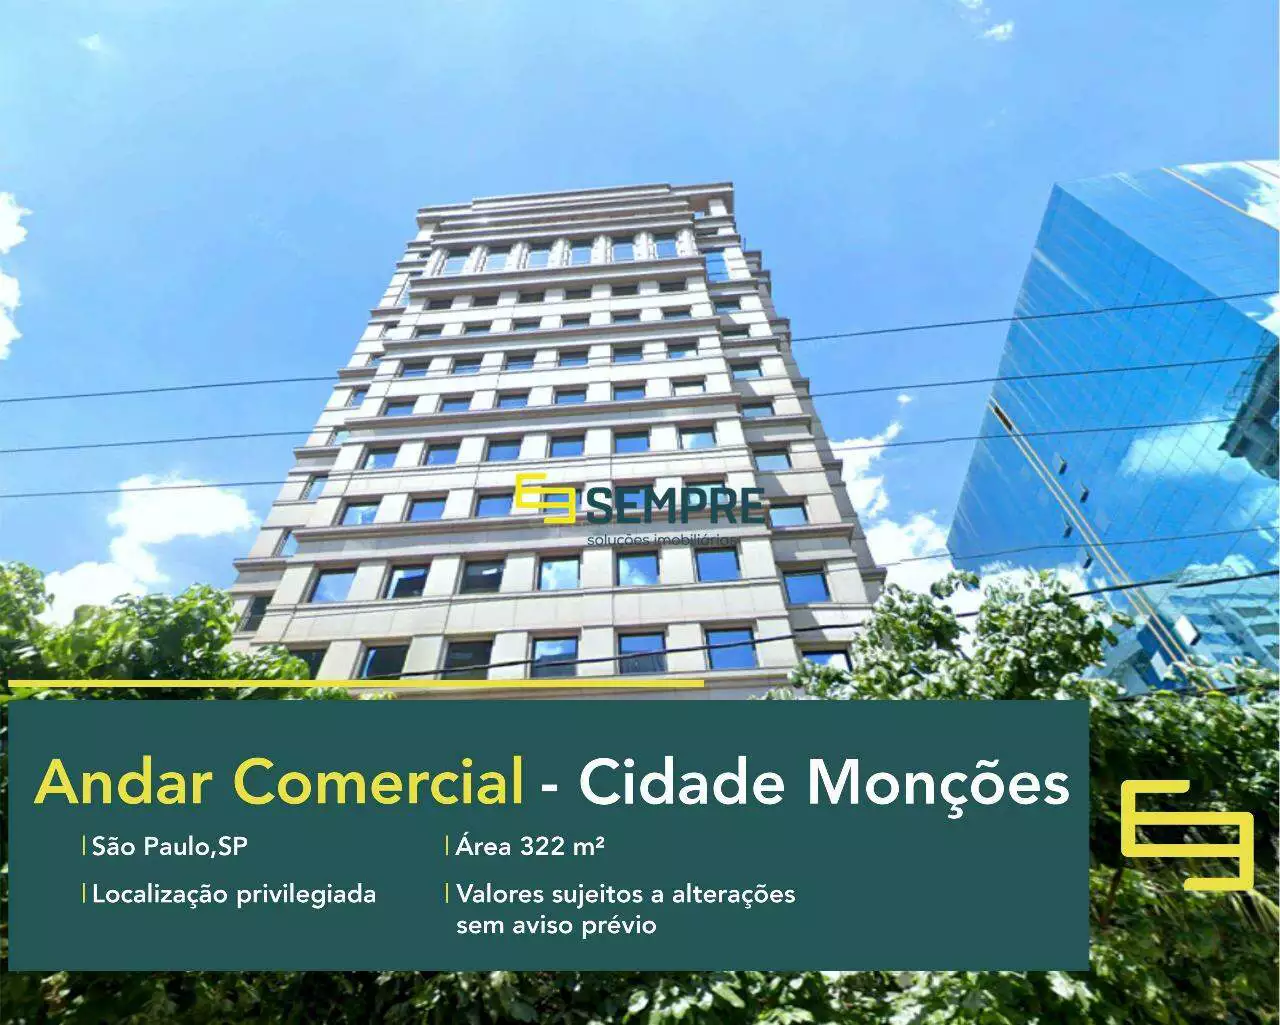 Andar corporativo para locação em SP - Cidade Monções, em excelente localização. O ponto comercial conta com área de 322 m².